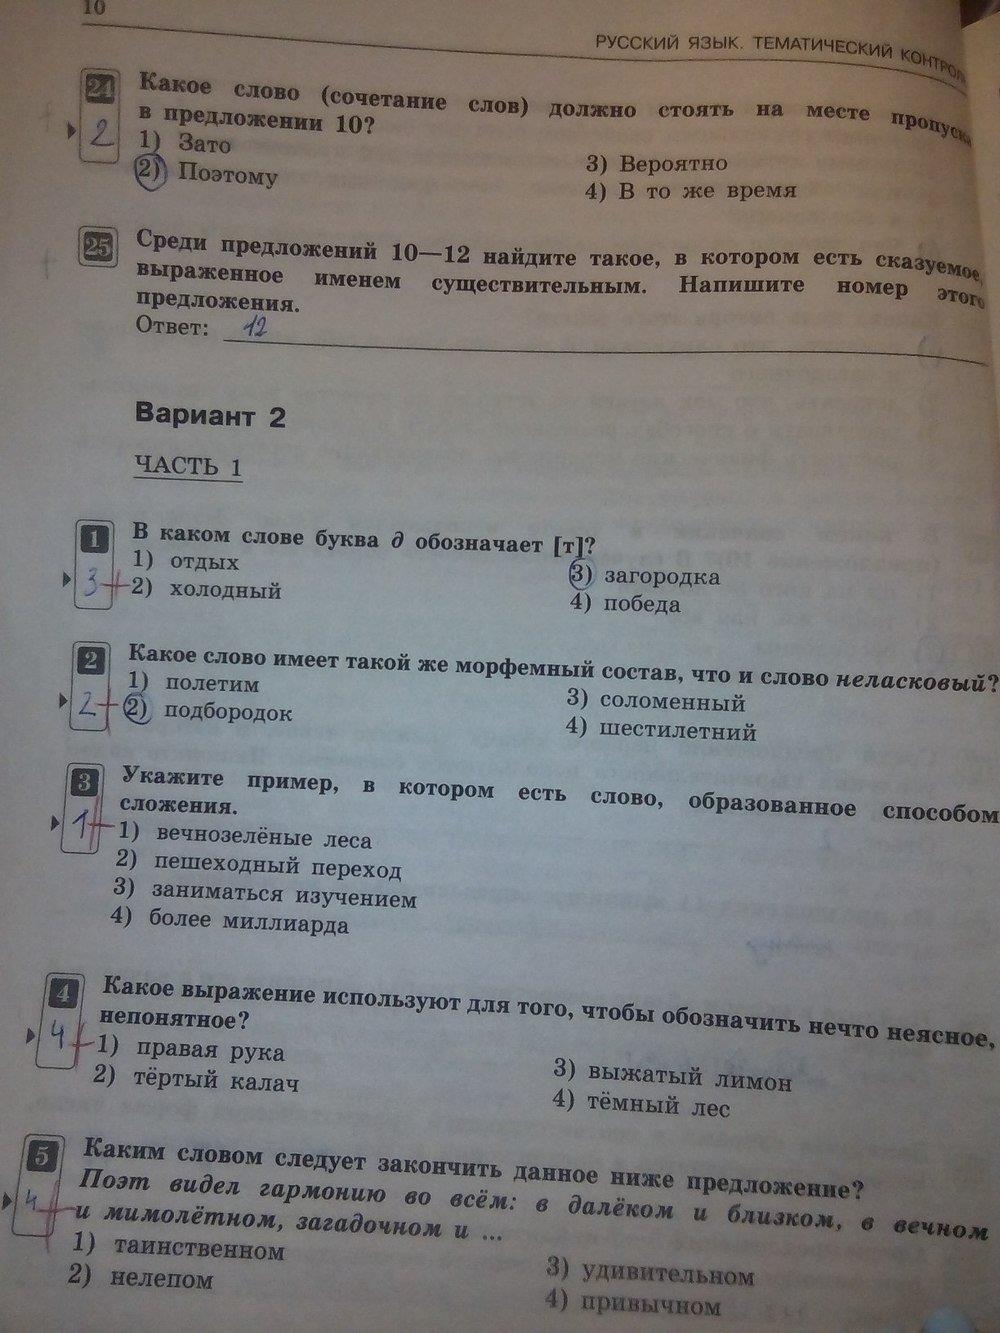 гдз 7 класс тематический контроль страница 10 русский язык Александров